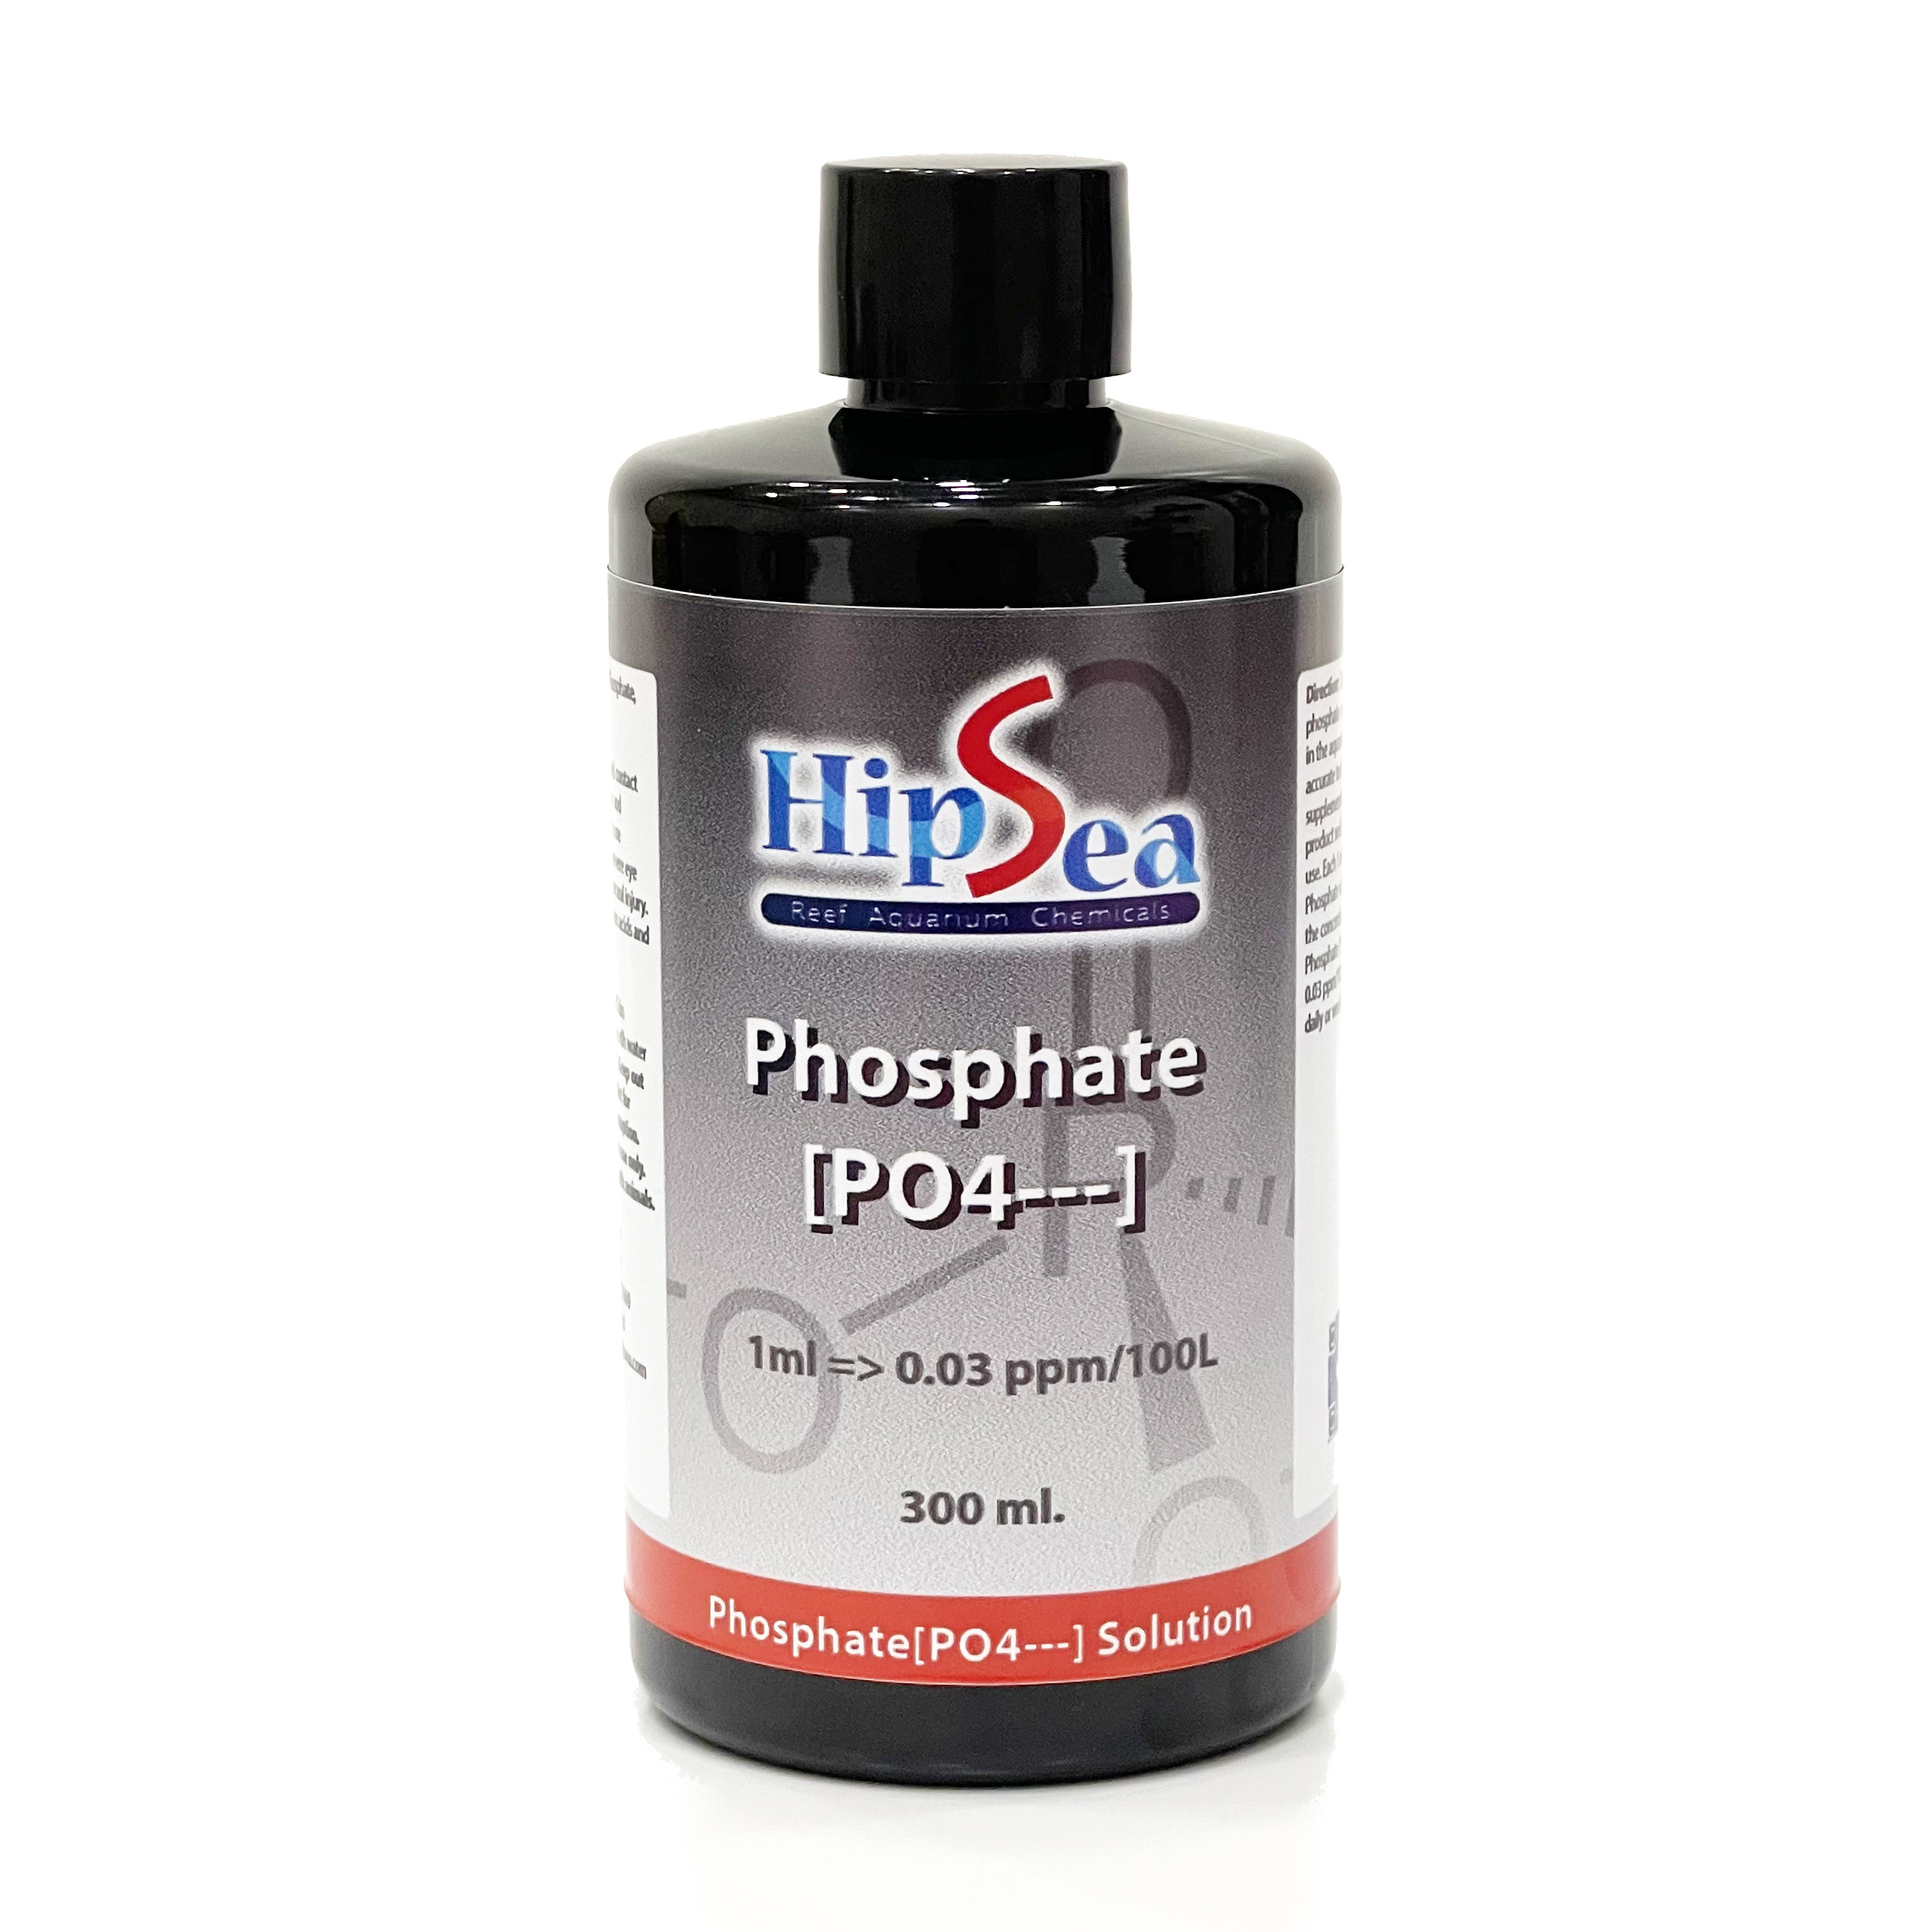 Phosphate [PO4---]